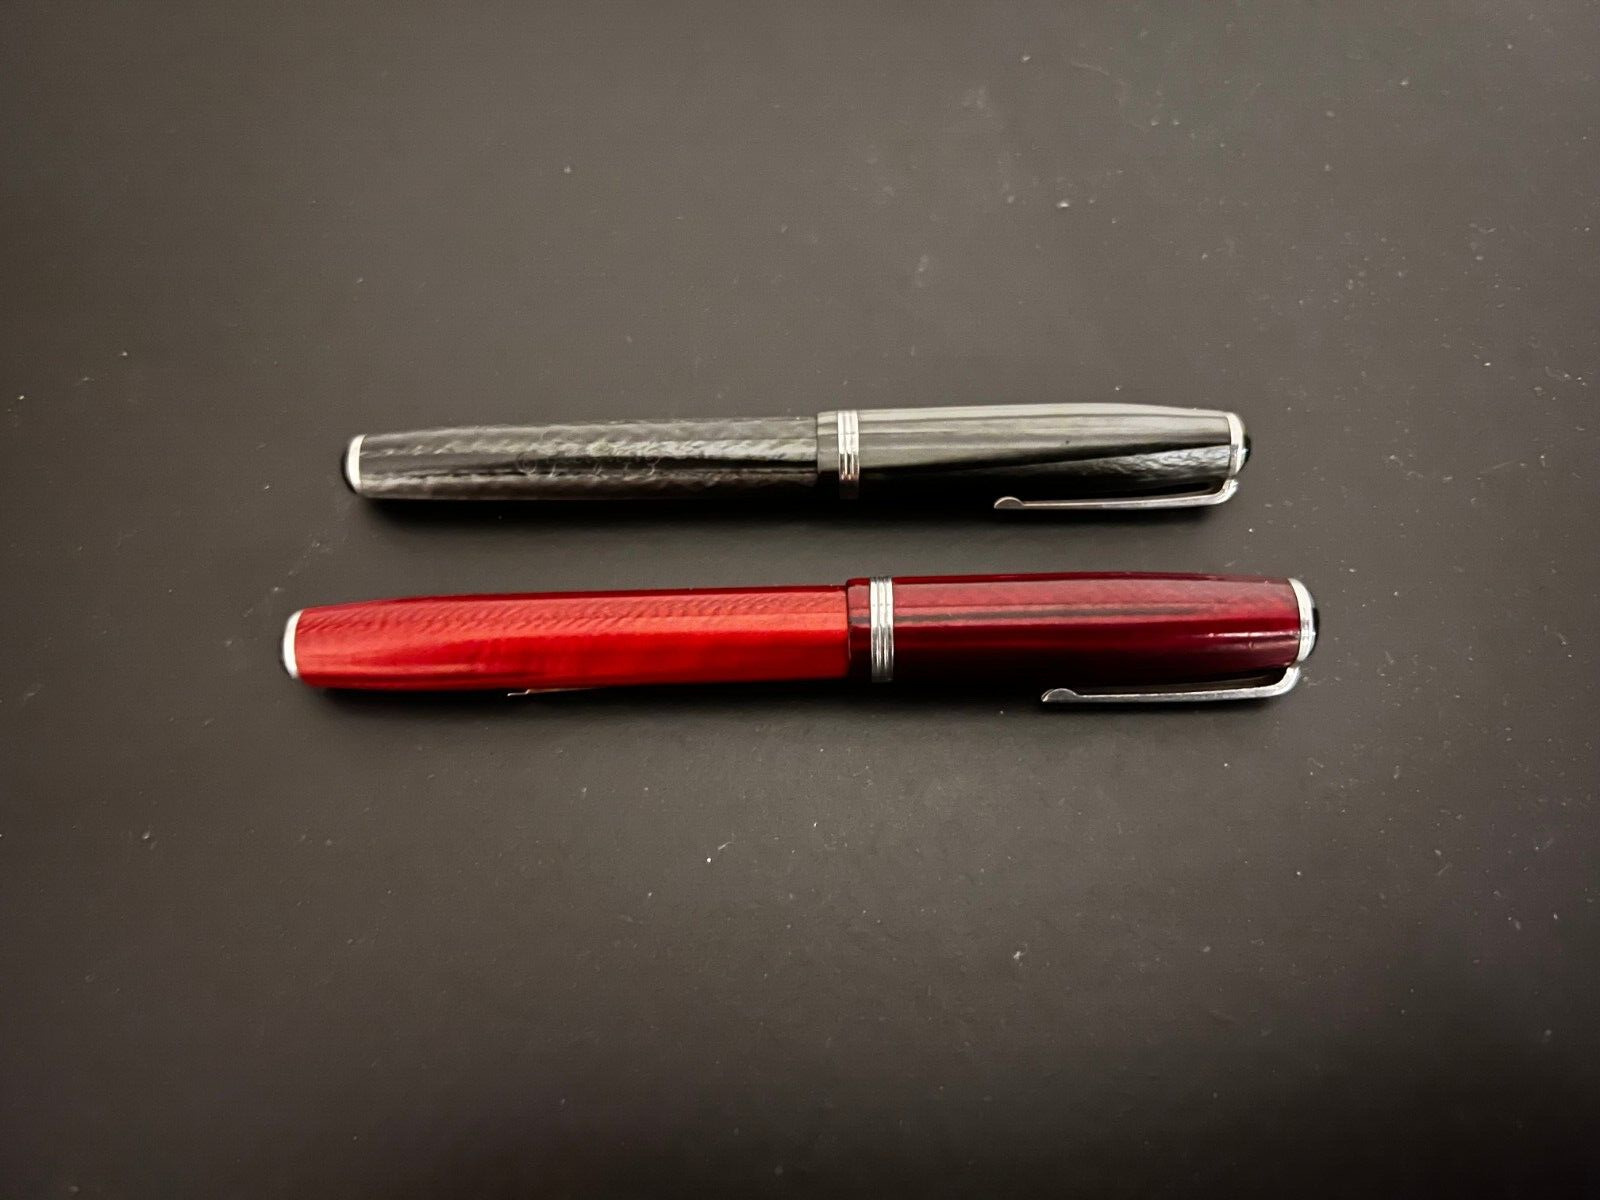 Pair of Esterbrook pens 2556 